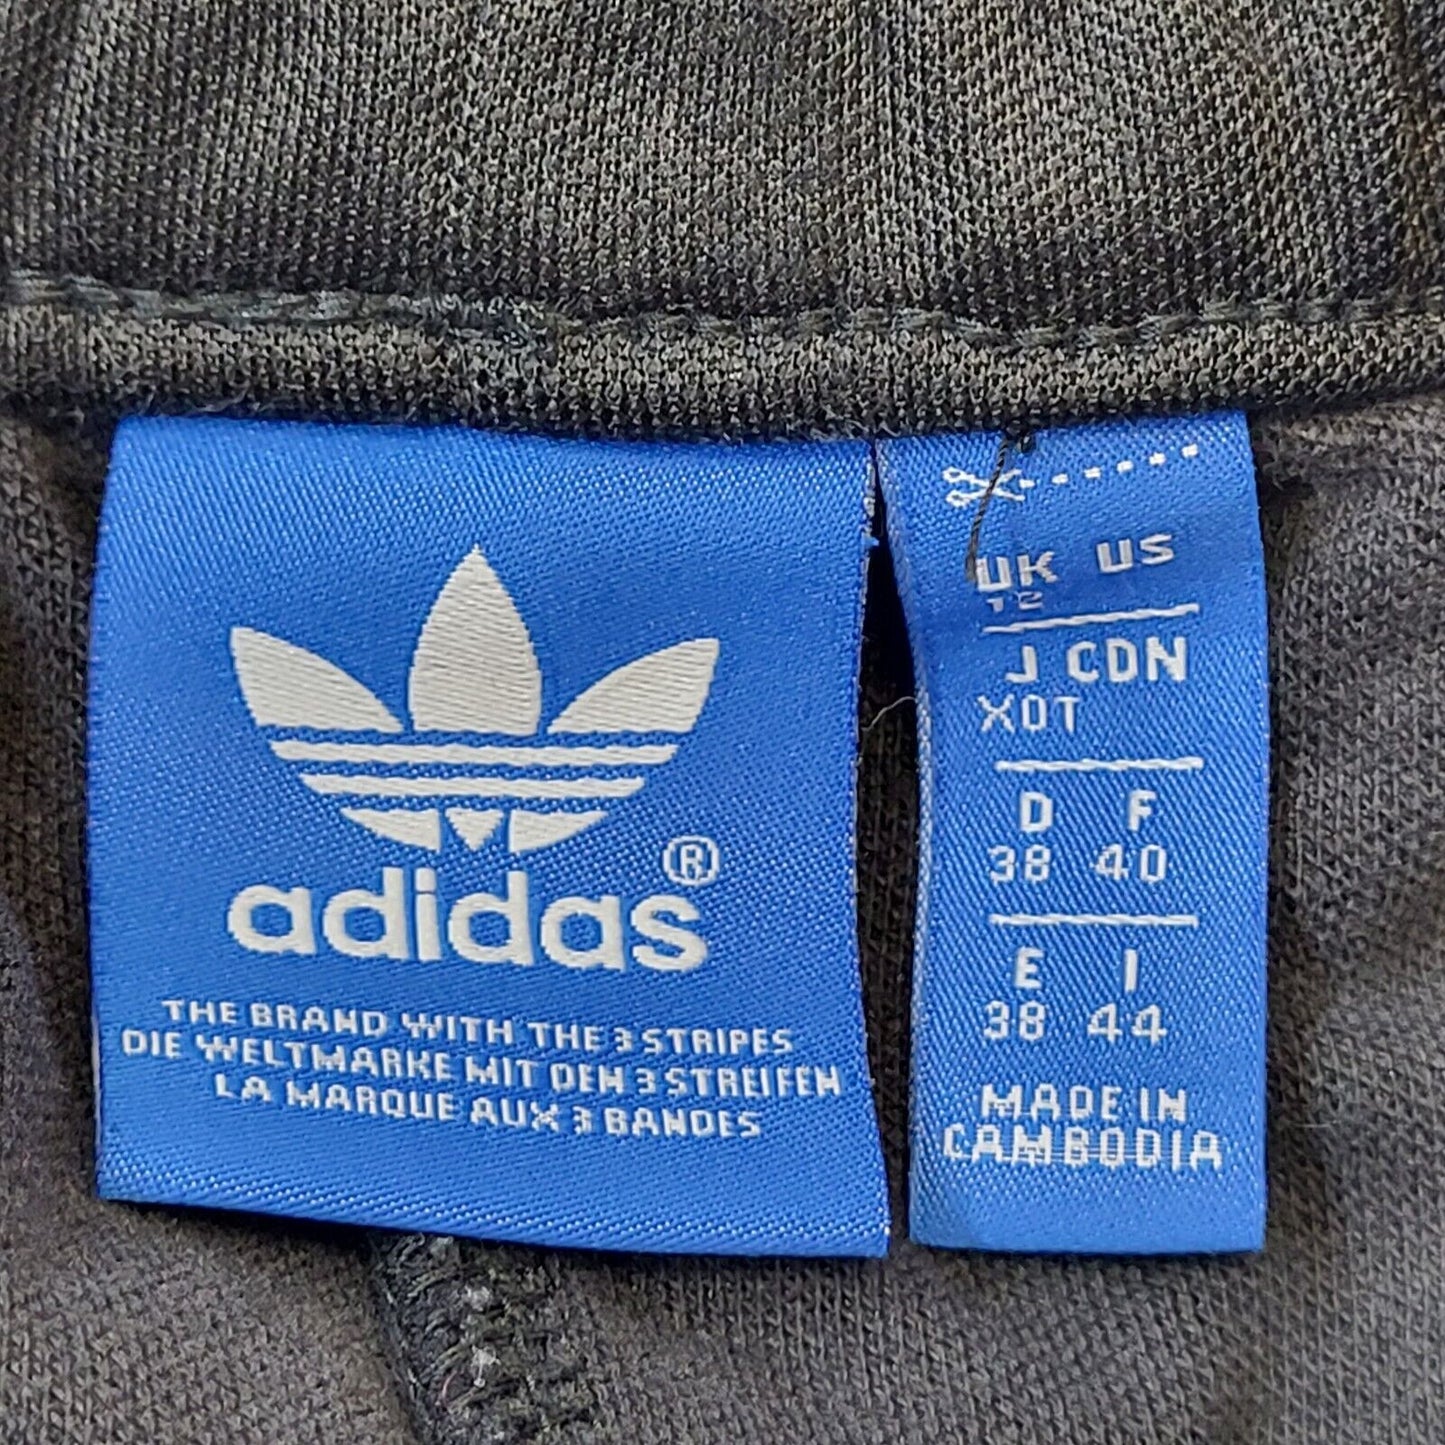 Adidas (12)